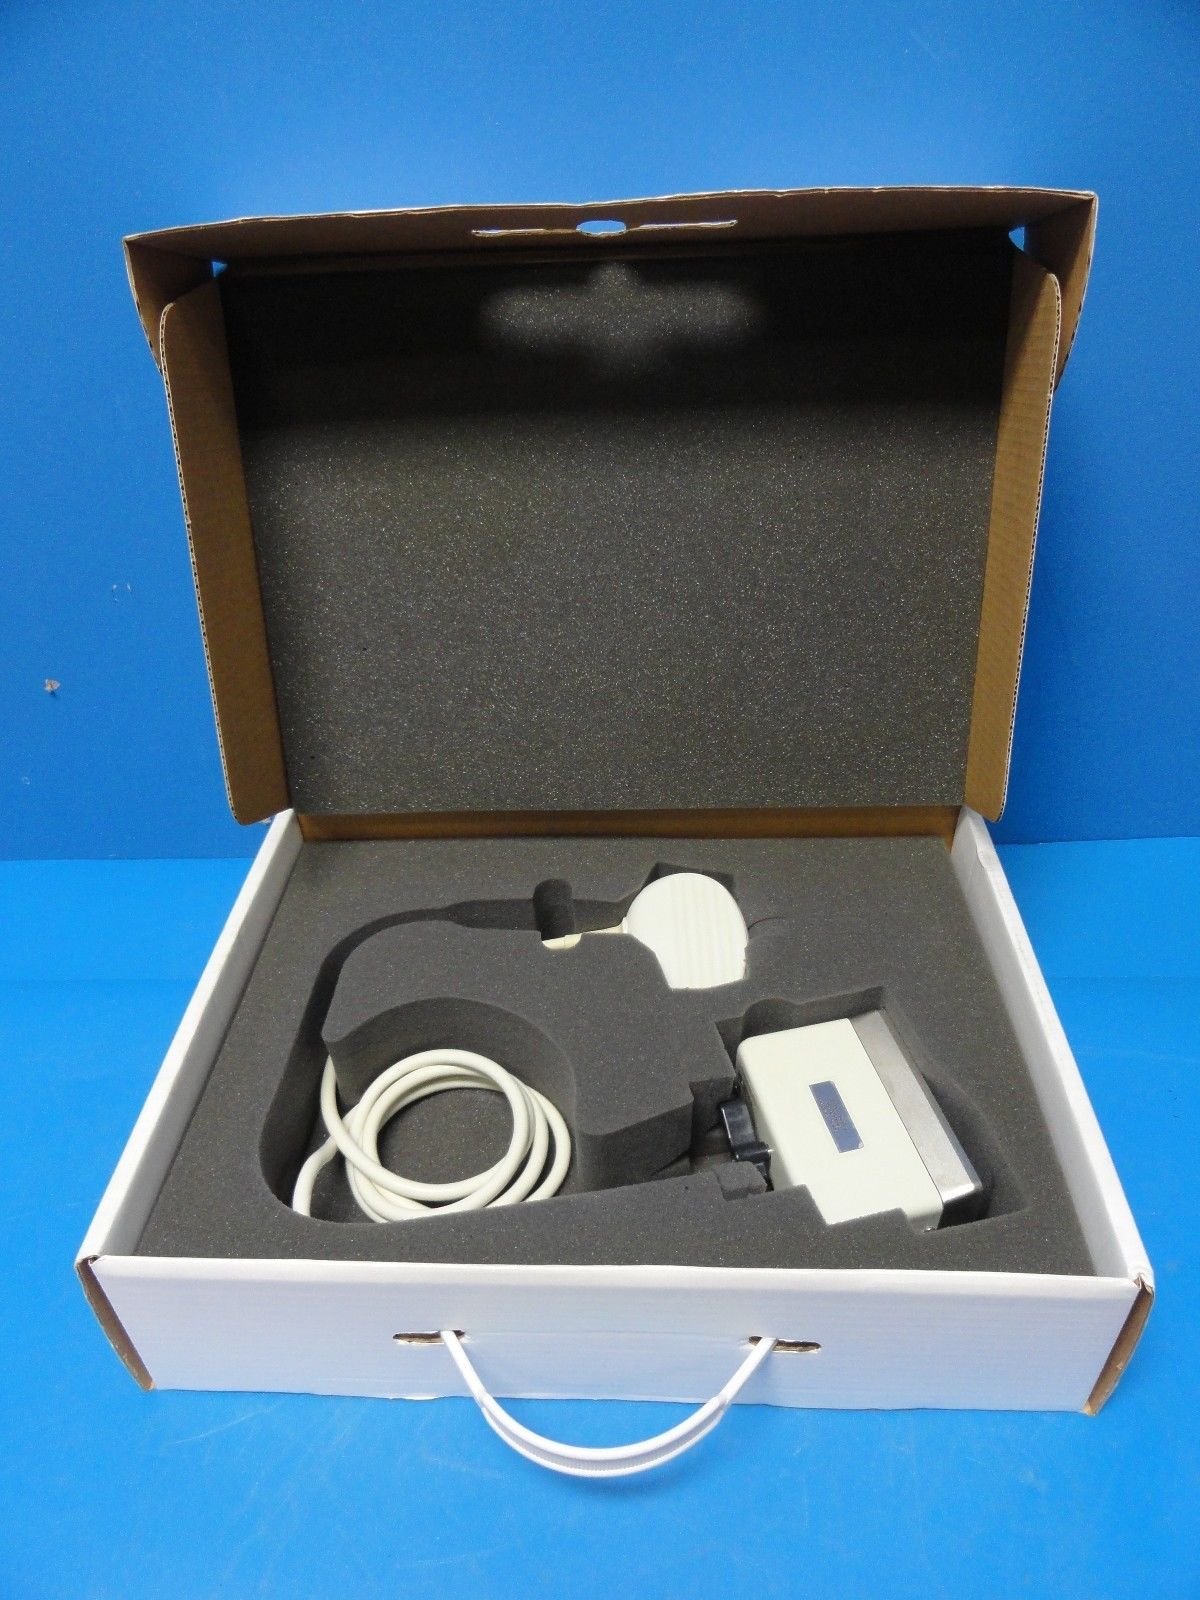 an open box containing a probe